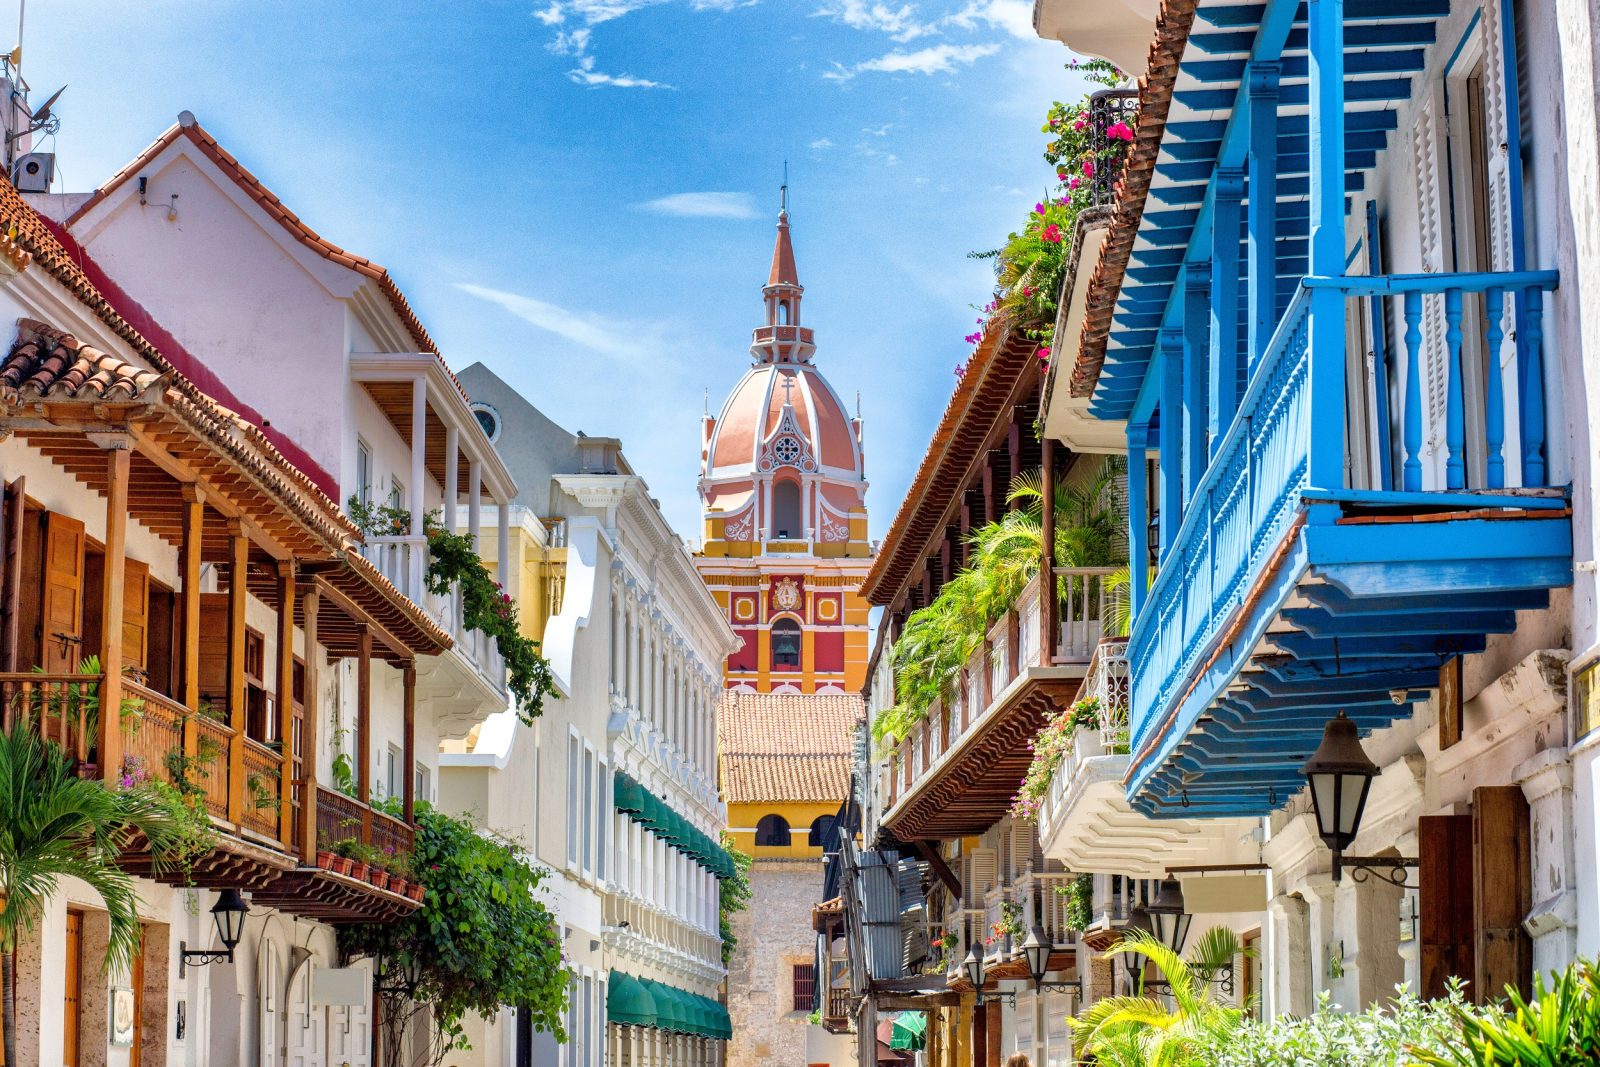 10 удивительных мест Колумбии
Картахена